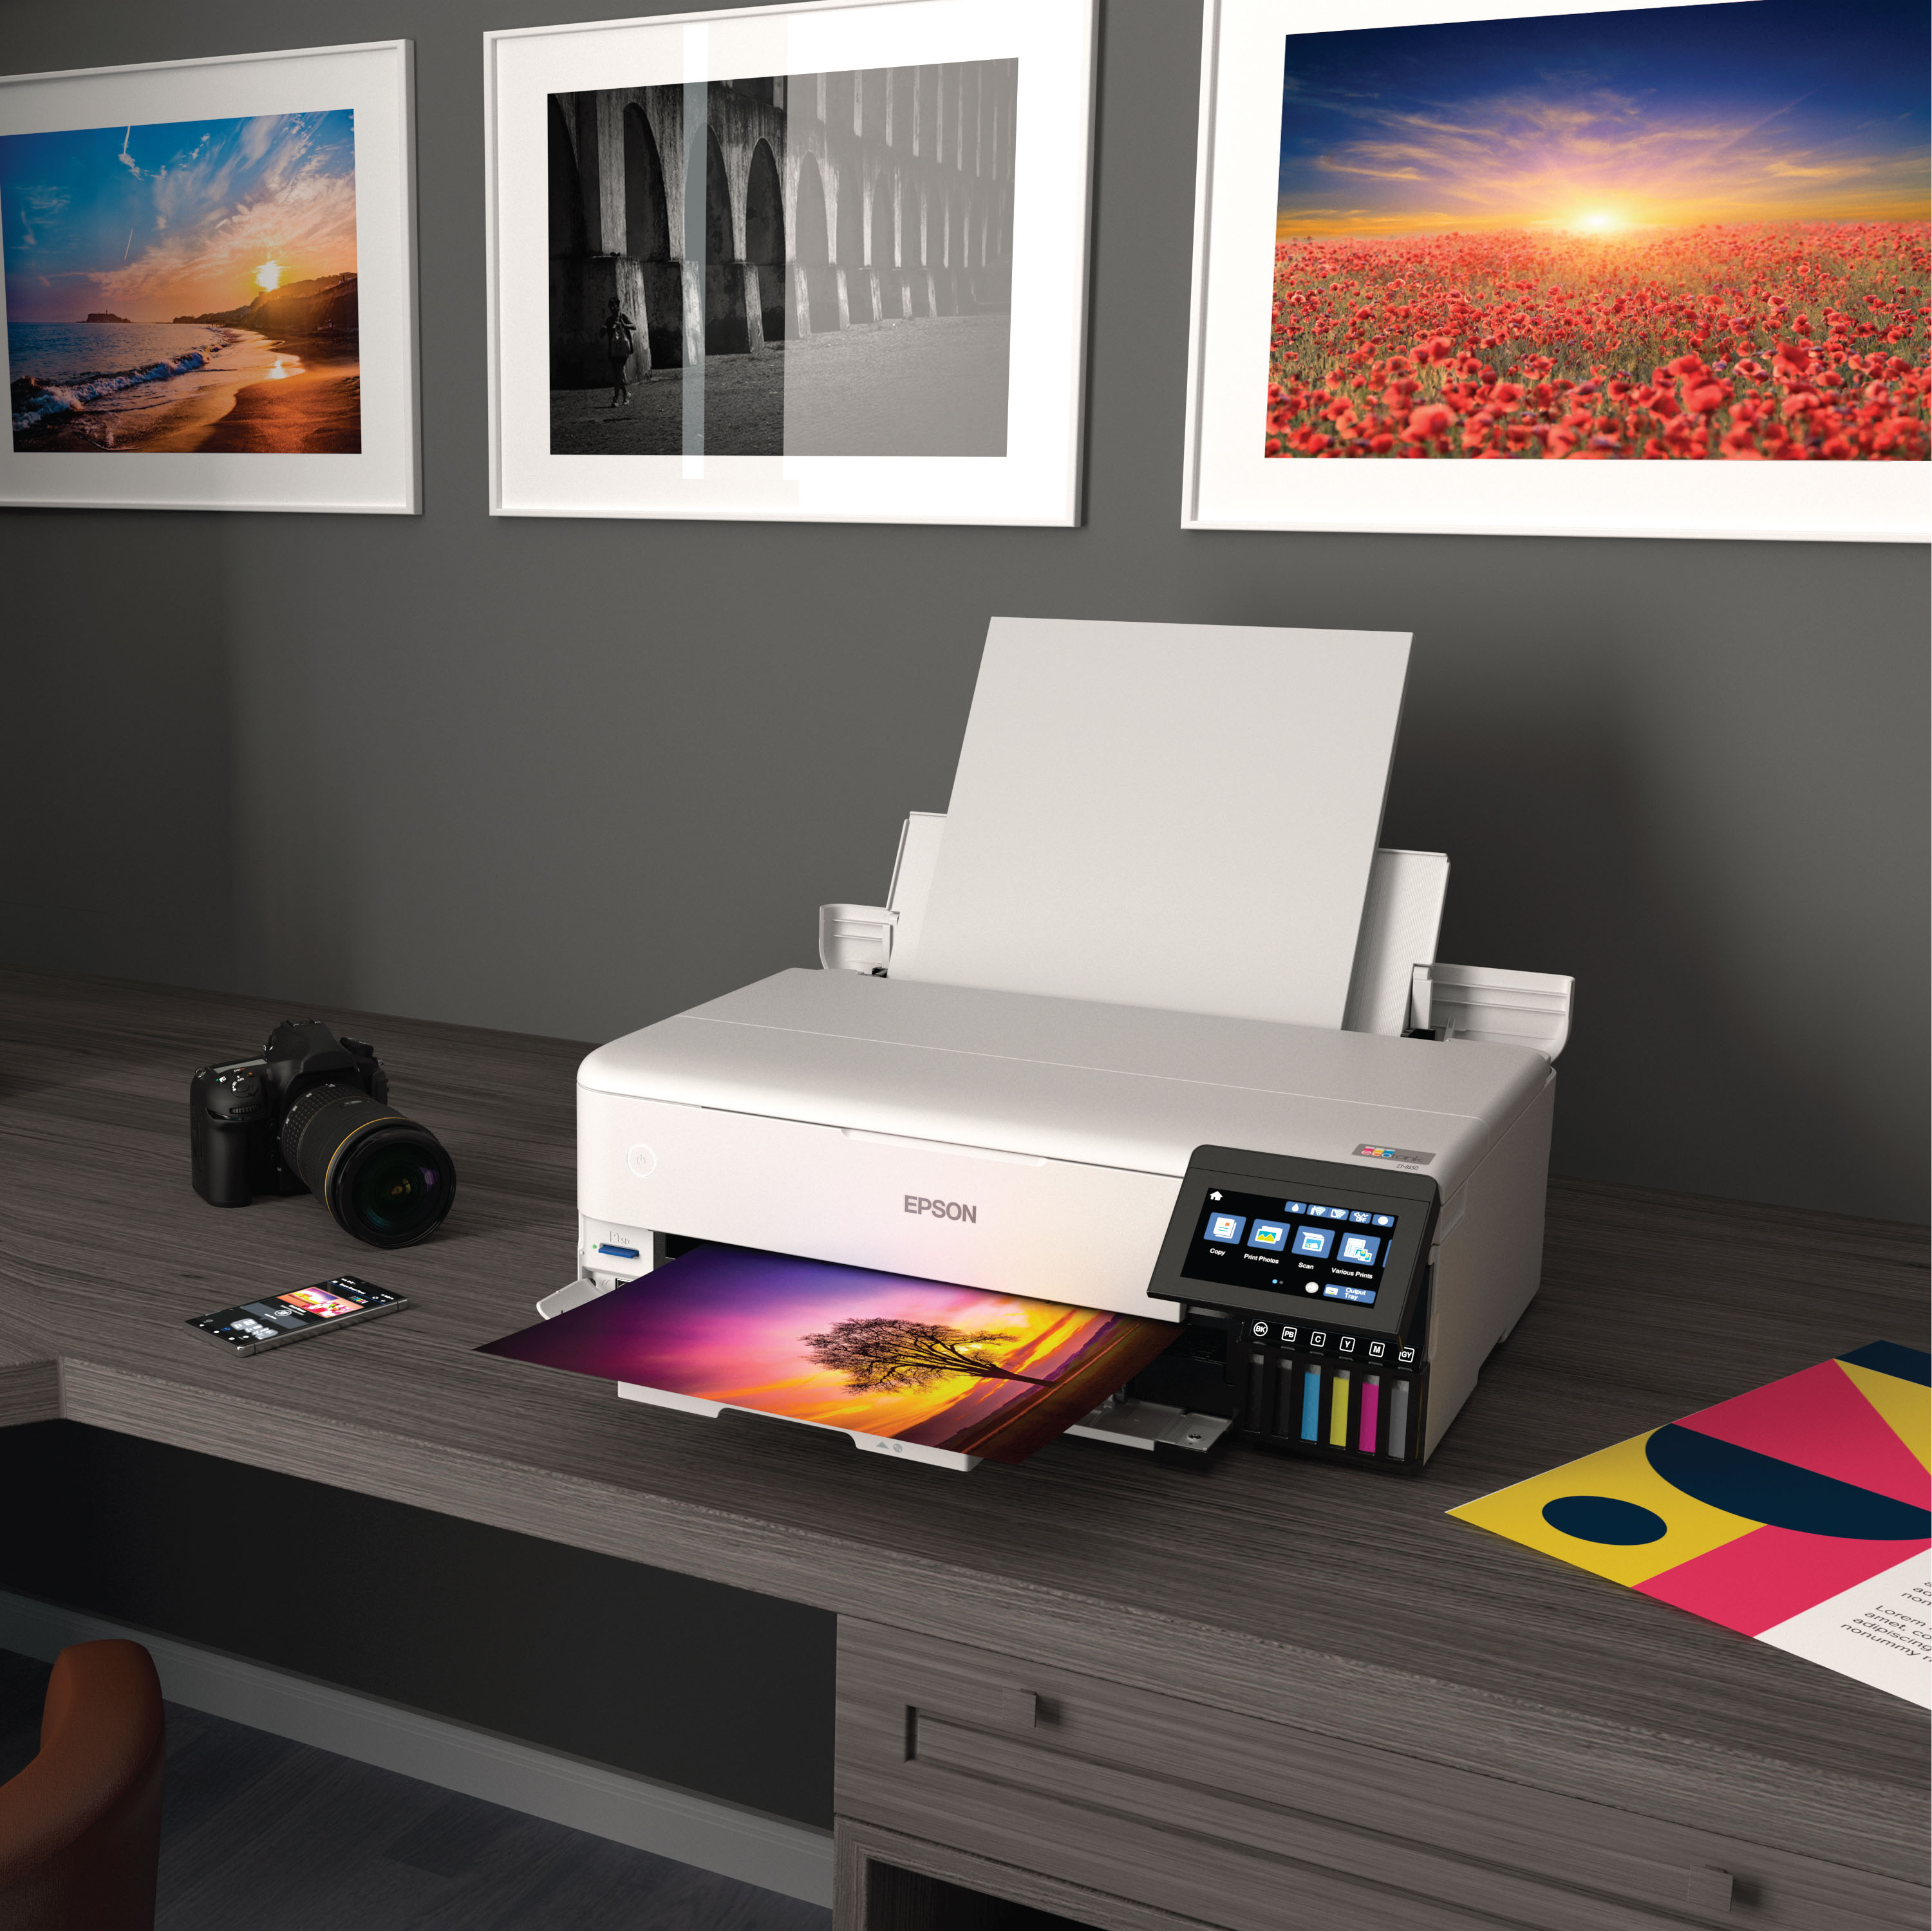 Epson EcoTank Photo ET-8550 Color Inkjet All-In-One Printer - White for  sale online